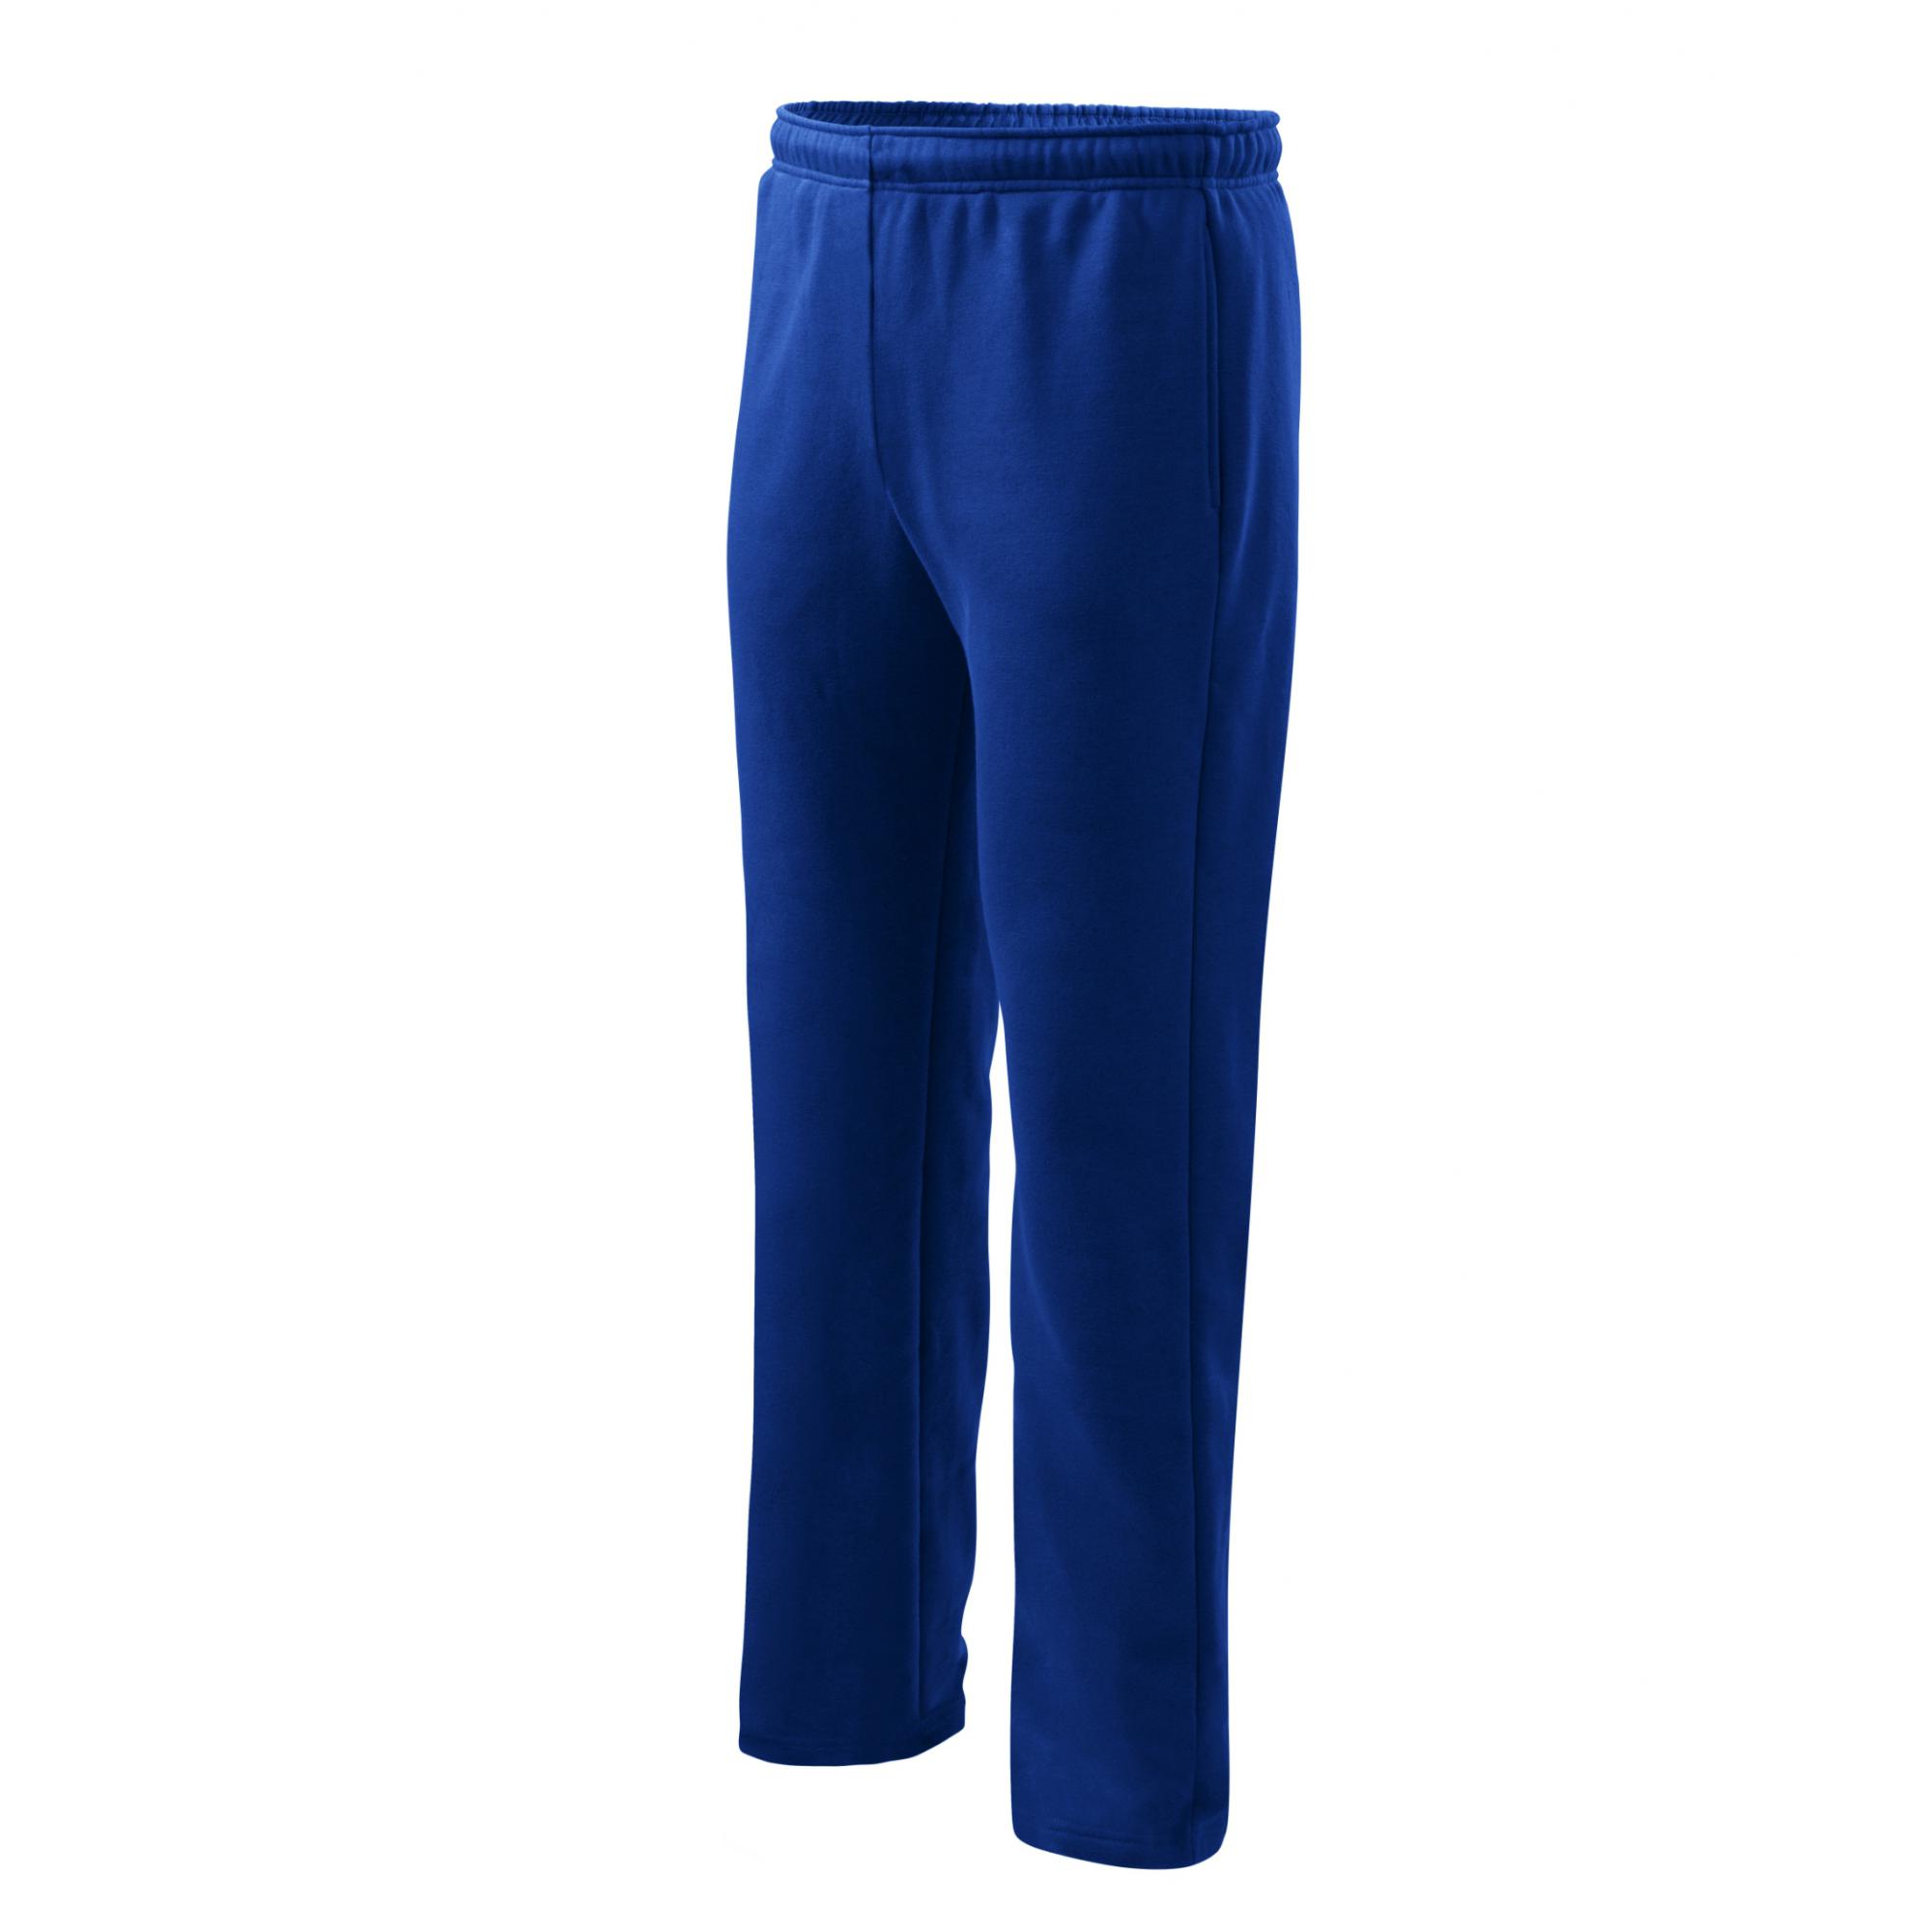 Pantaloni pentru bărbaţi/copii Comfort 607 Albastru regal 12ani